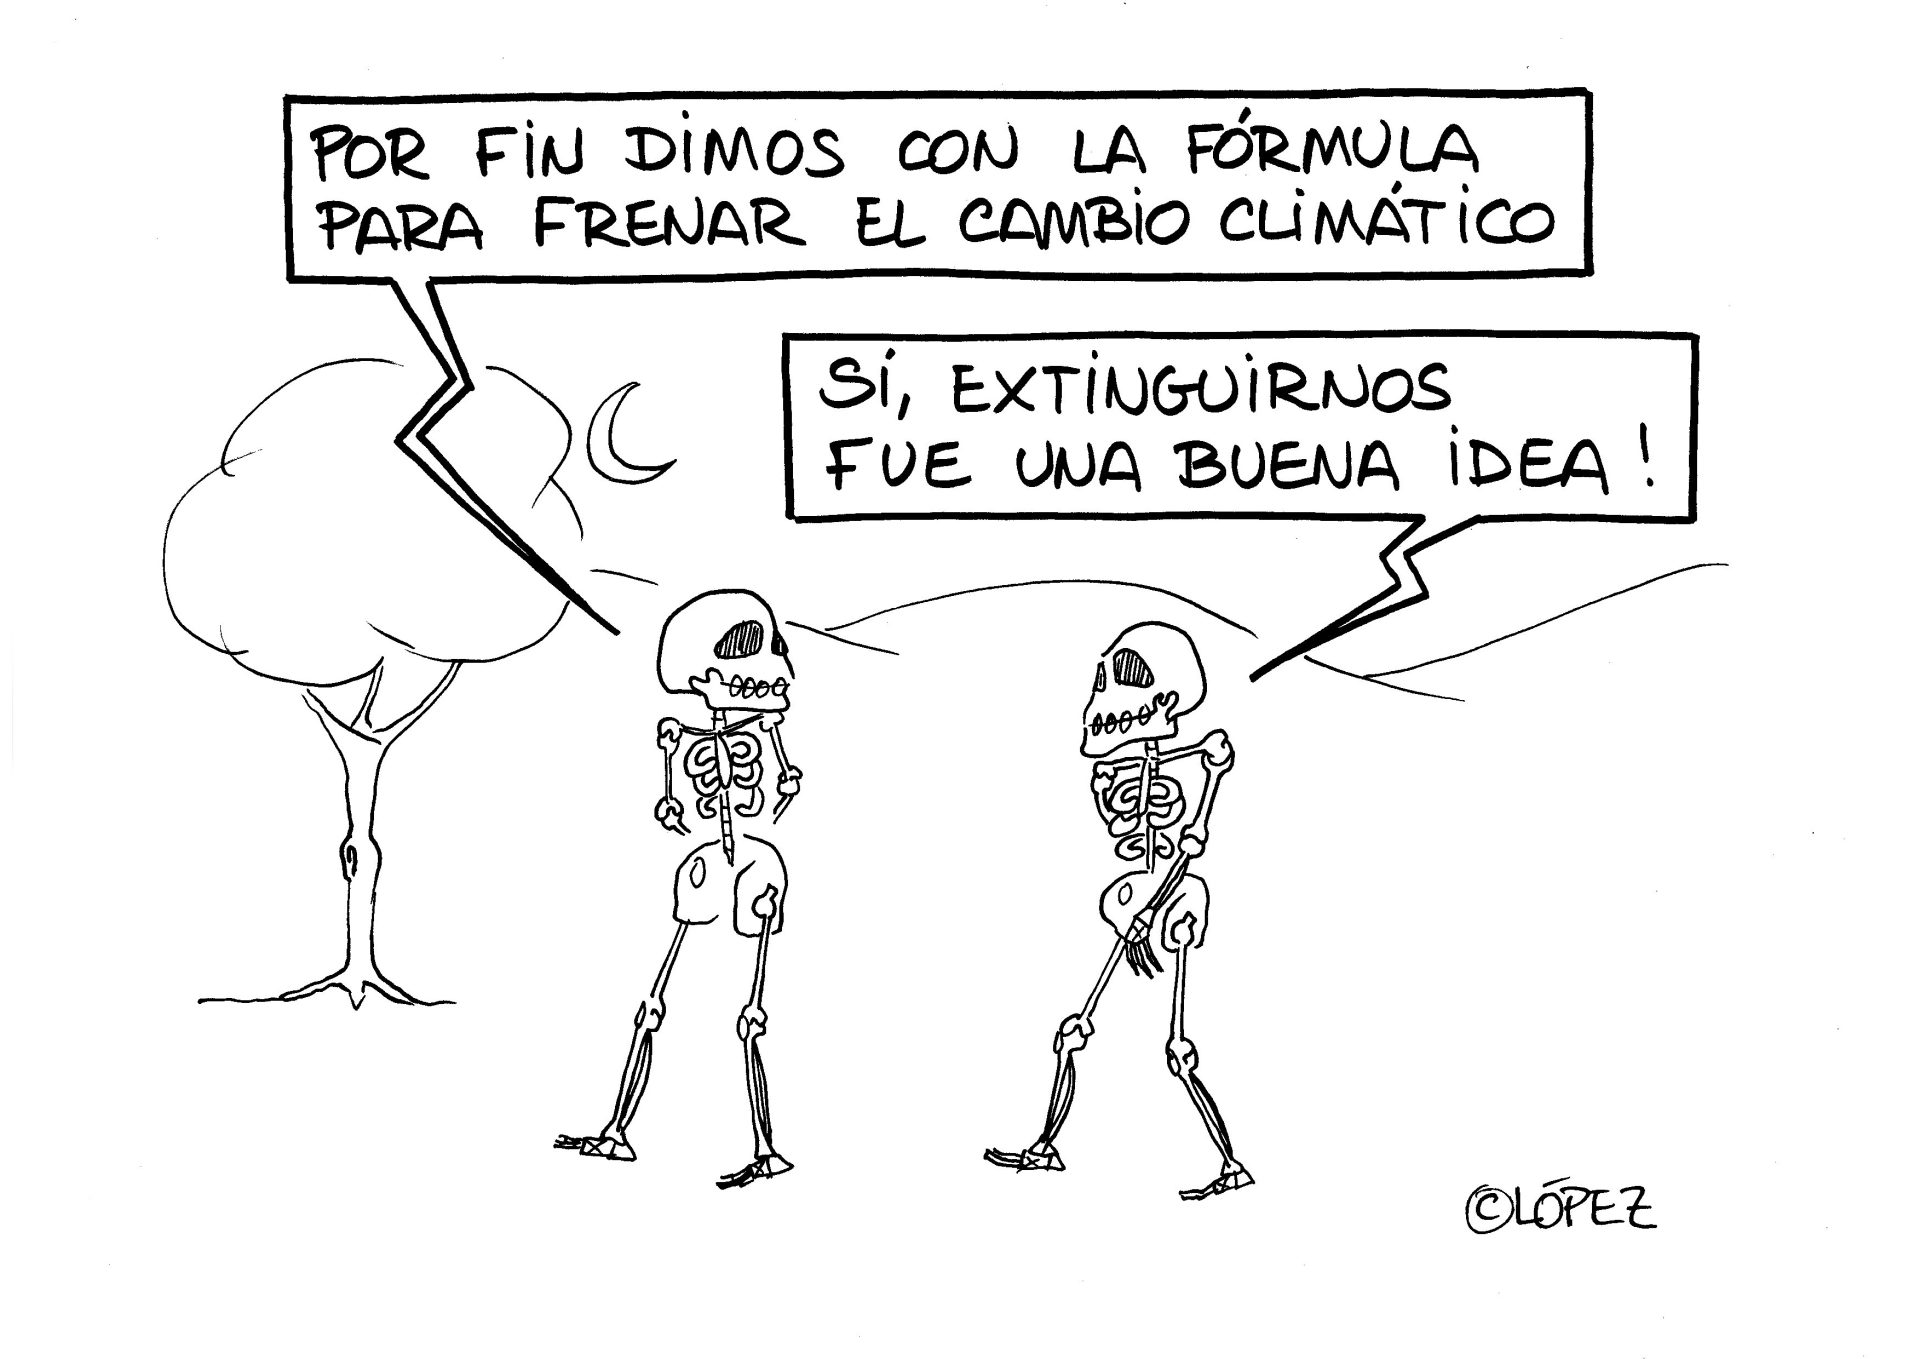 La fórmula para acabar con la crísis climática. Viñeta ambiental por Juan López Rico (#López) en la bitácora de humor gráfico ambiental #VivalaBagatela en @efeverde